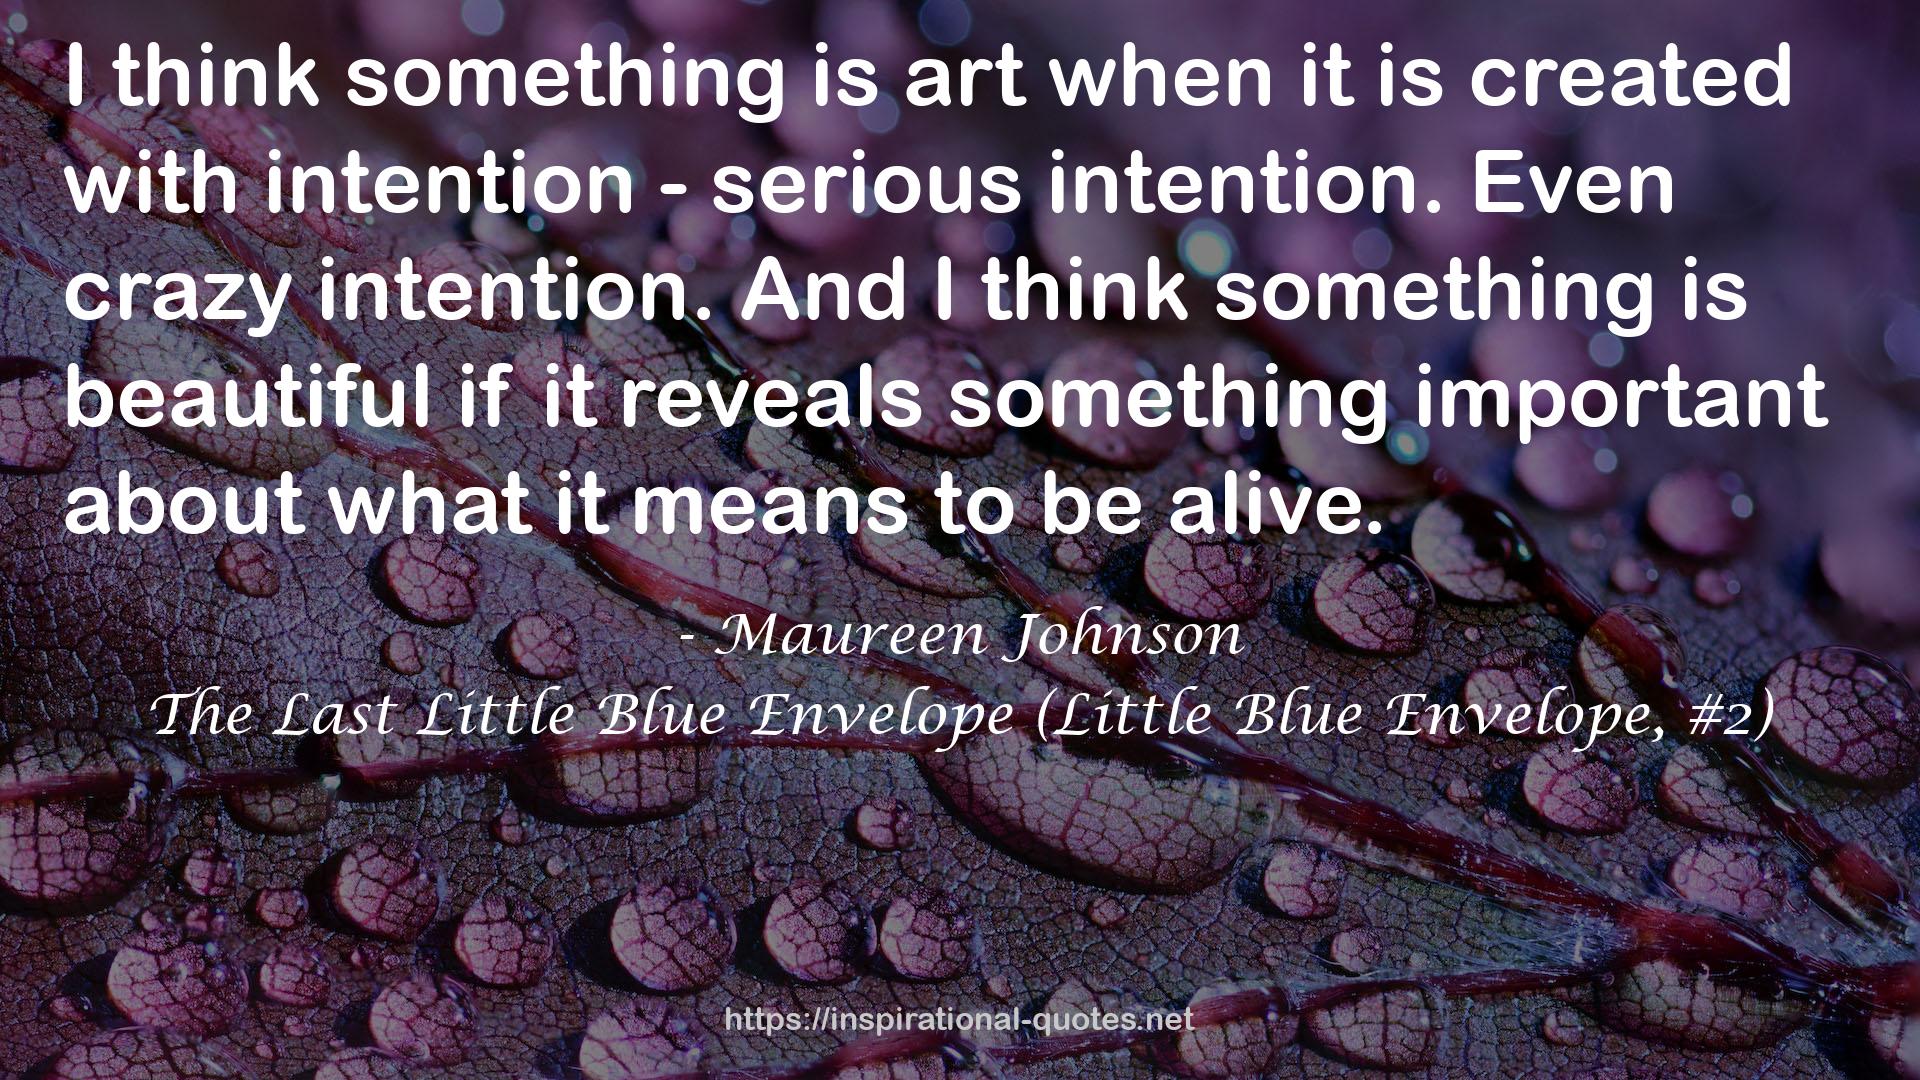 The Last Little Blue Envelope (Little Blue Envelope, #2) QUOTES